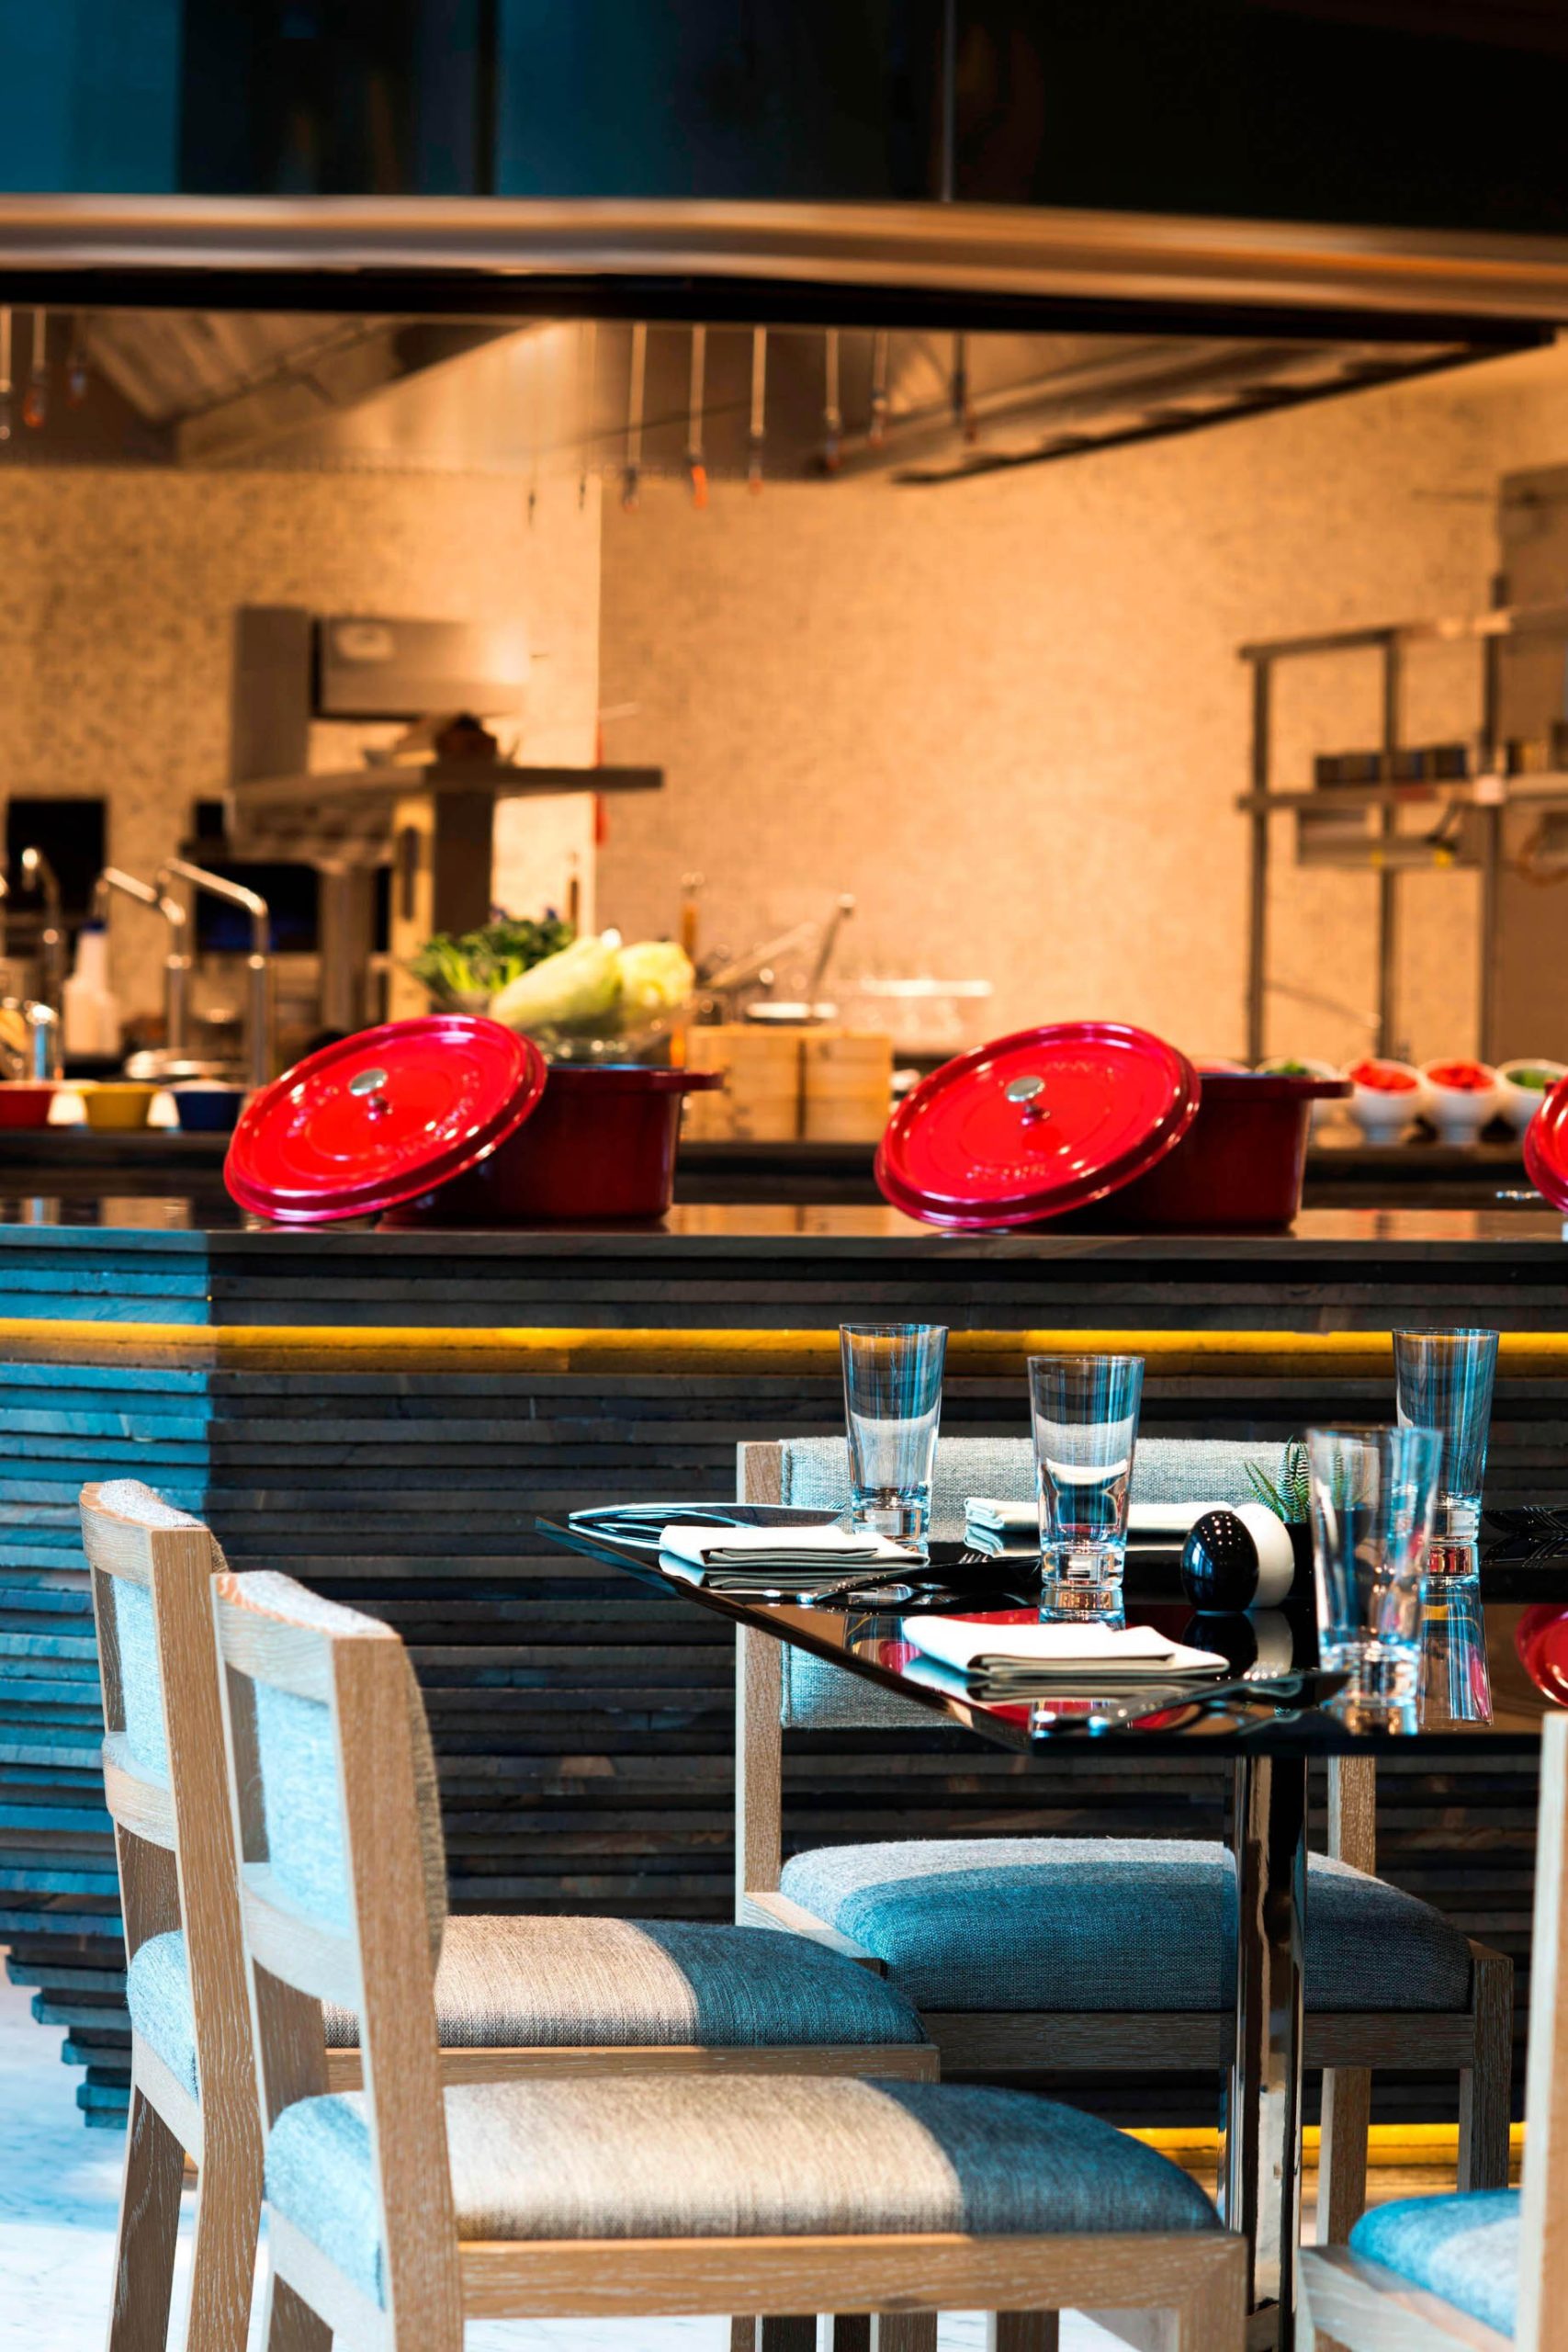 W Guangzhou Hotel – Tianhe District, Guangzhou, China – The Kitchen Table Seating